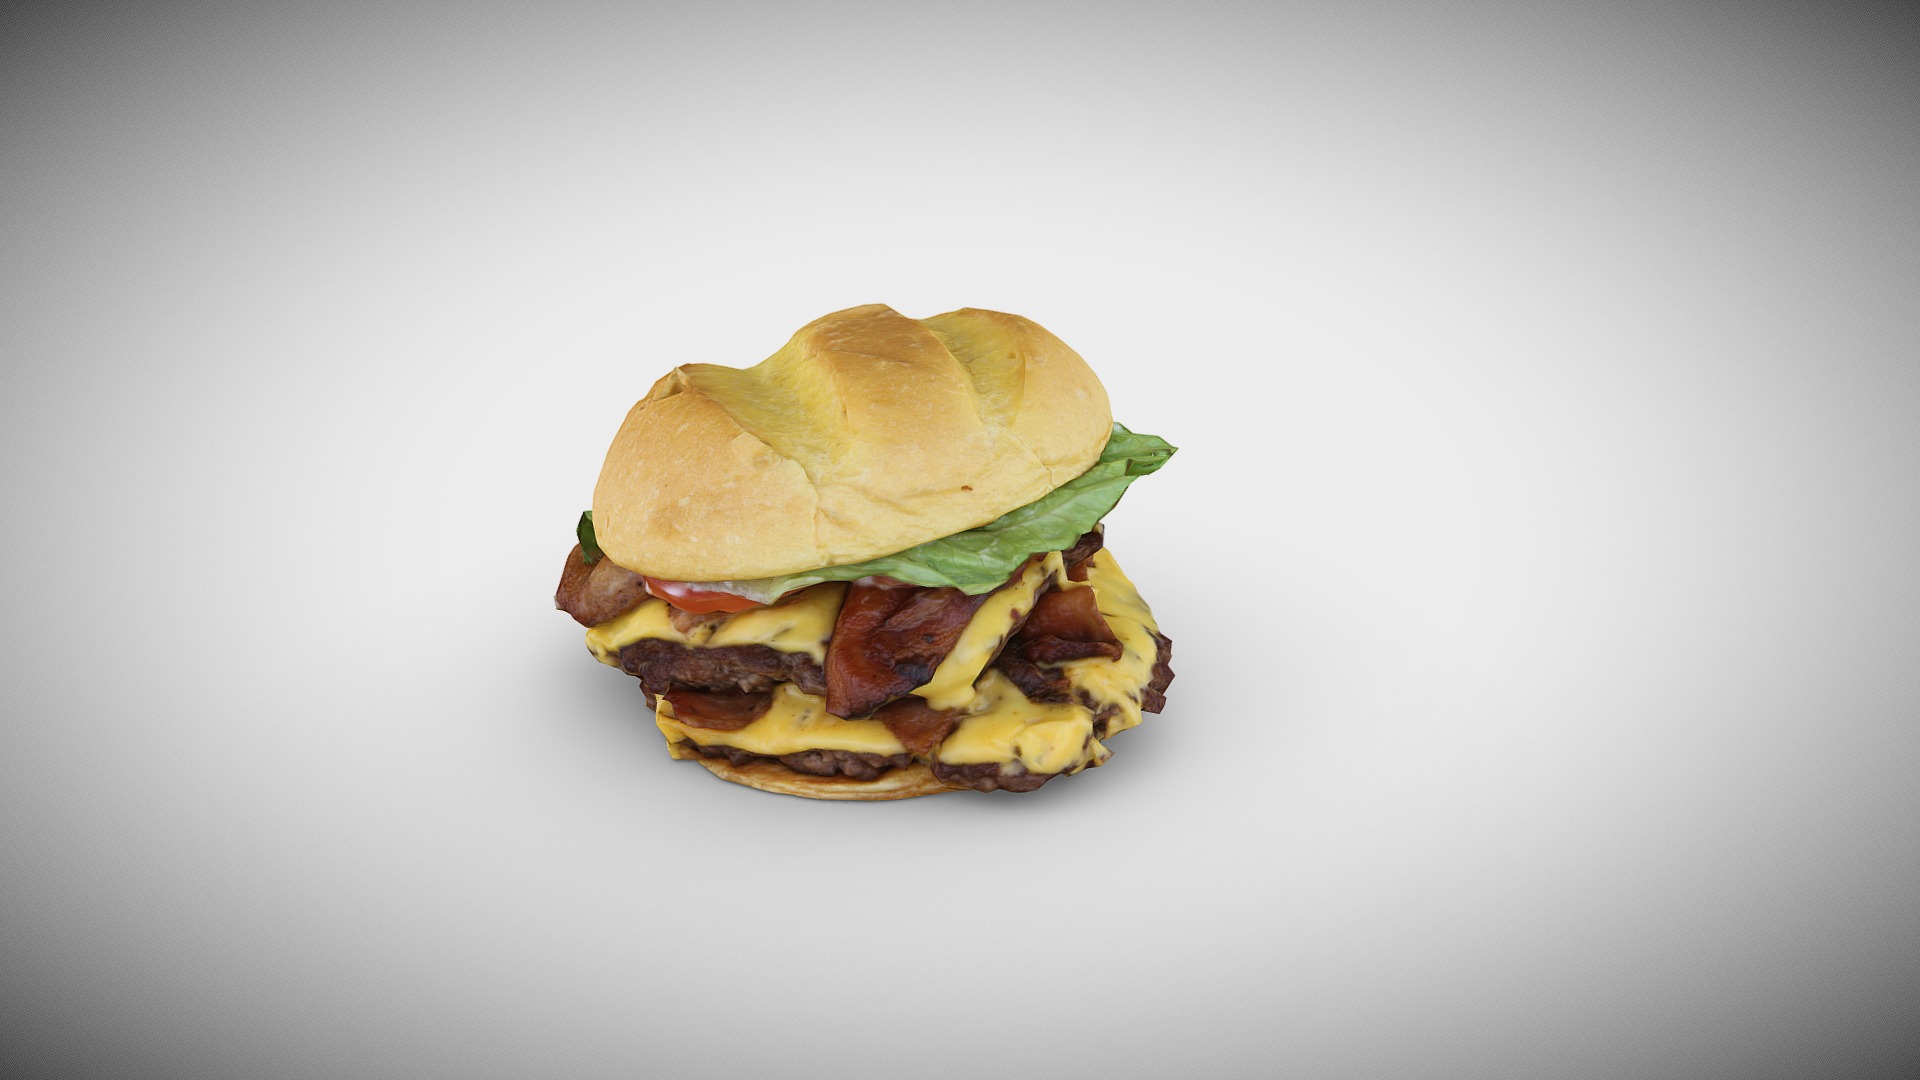 3D model Burger Photogrammetry - This is a 3D model of the Burger Photogrammetry. The 3D model is about a hamburger with a bun.